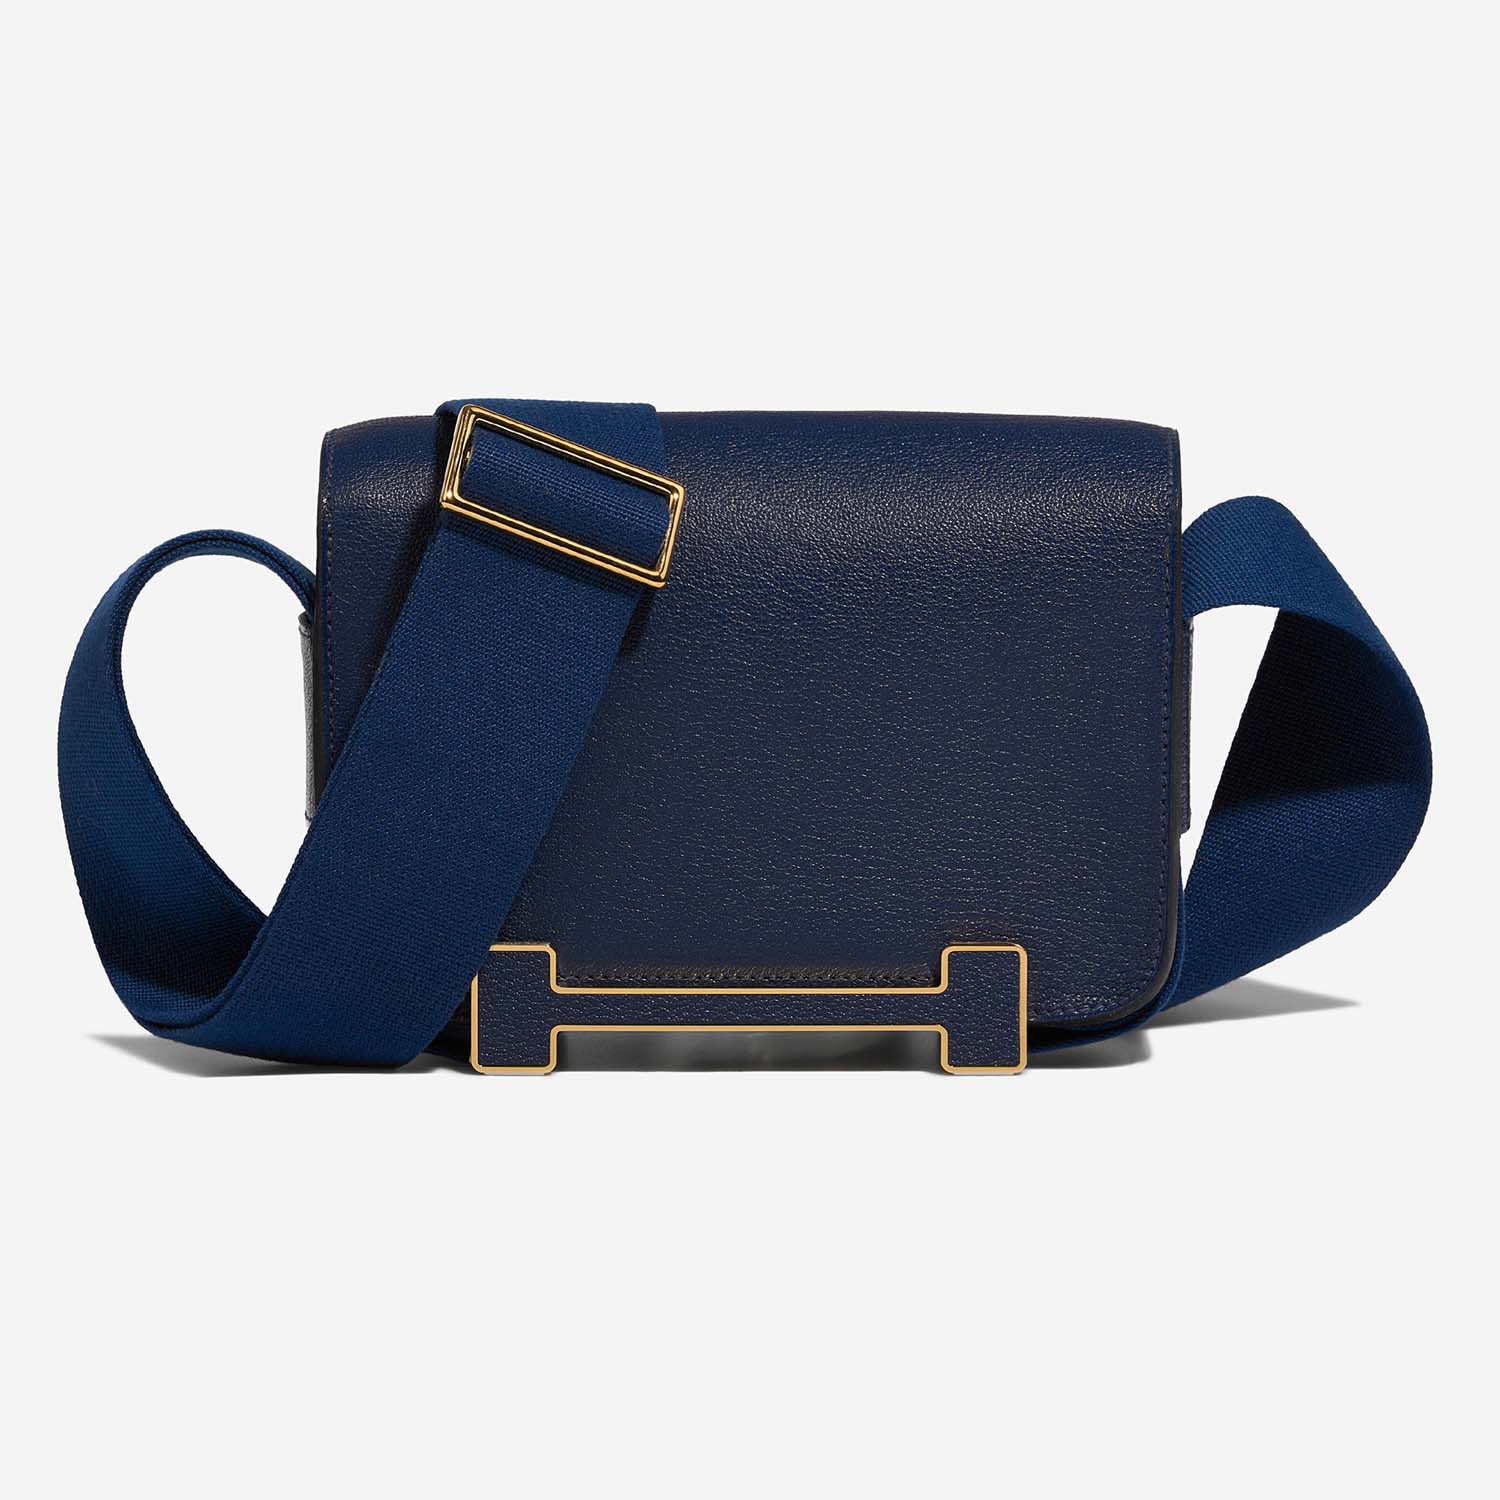 Hermès Geta Navy Front | Verkaufen Sie Ihre Designer-Tasche auf Saclab.com